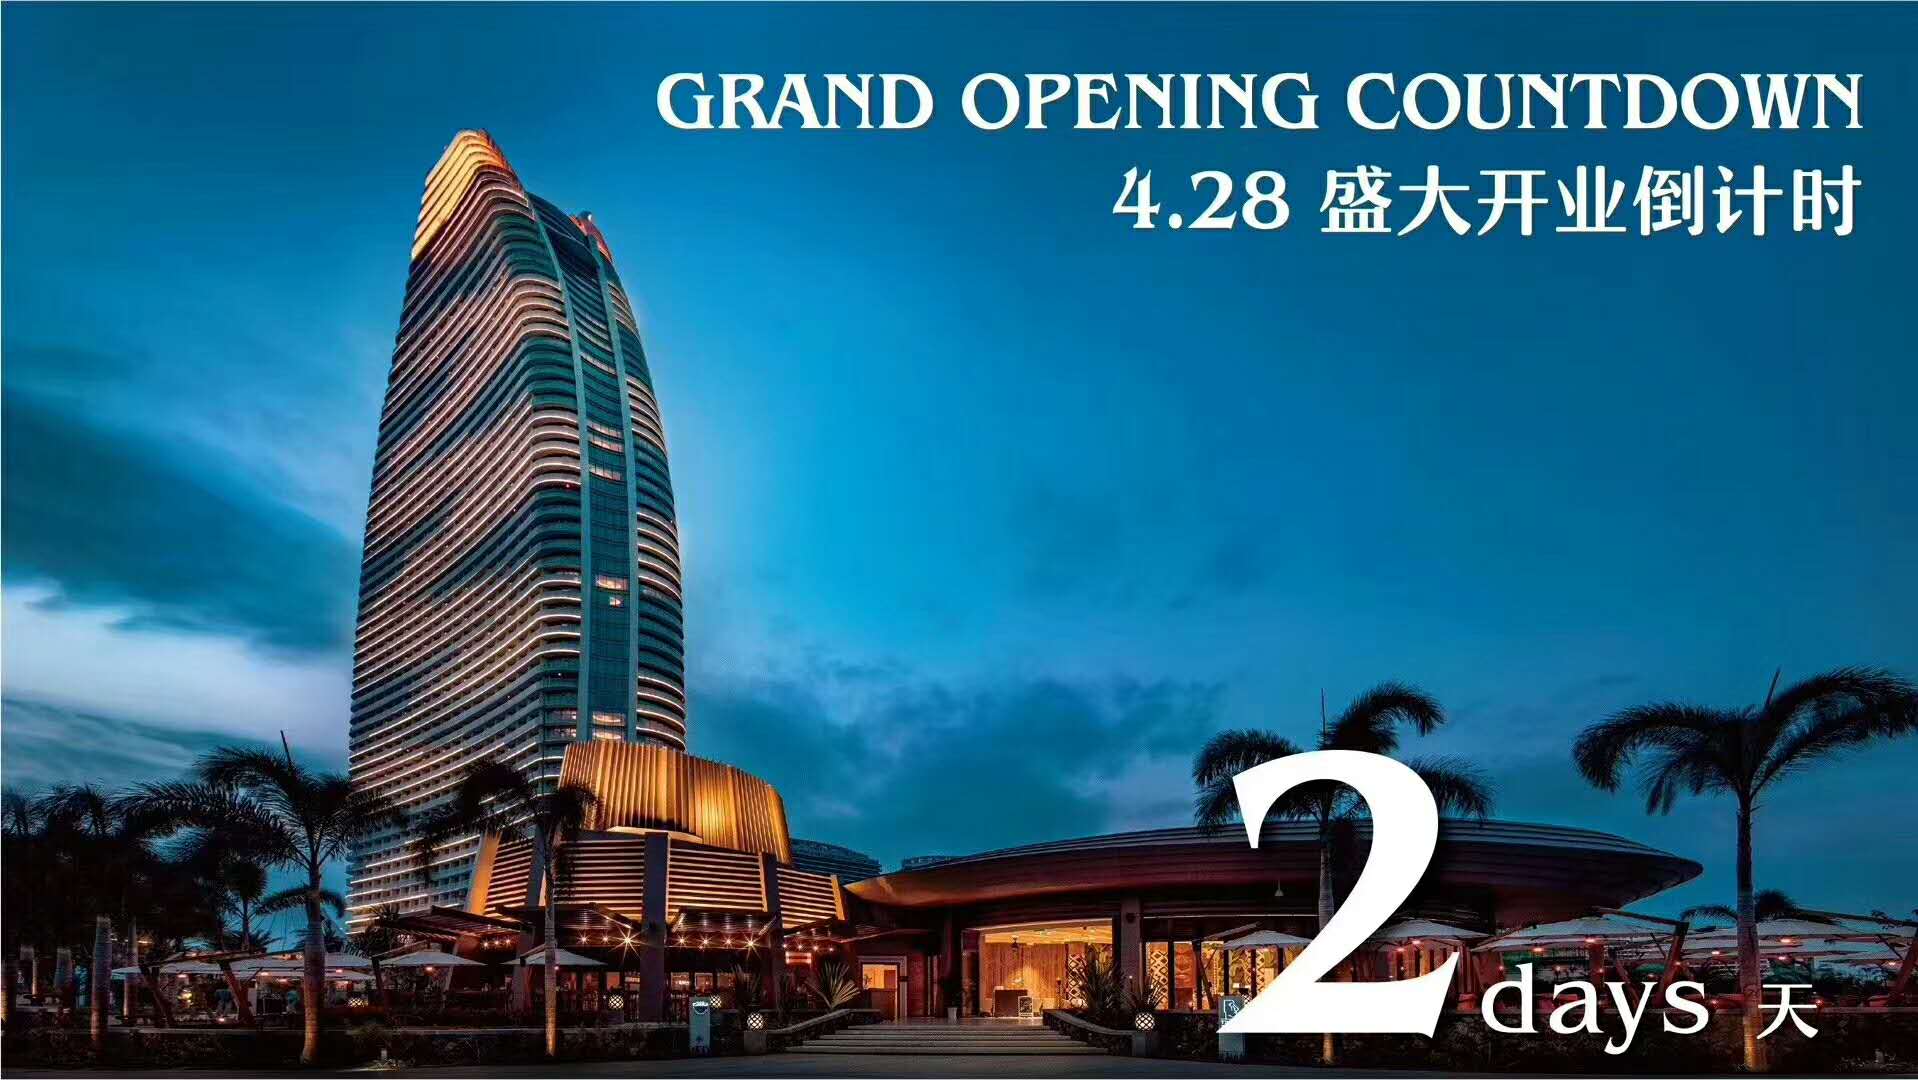 国内首家七星级酒店开业:投资110亿,最贵